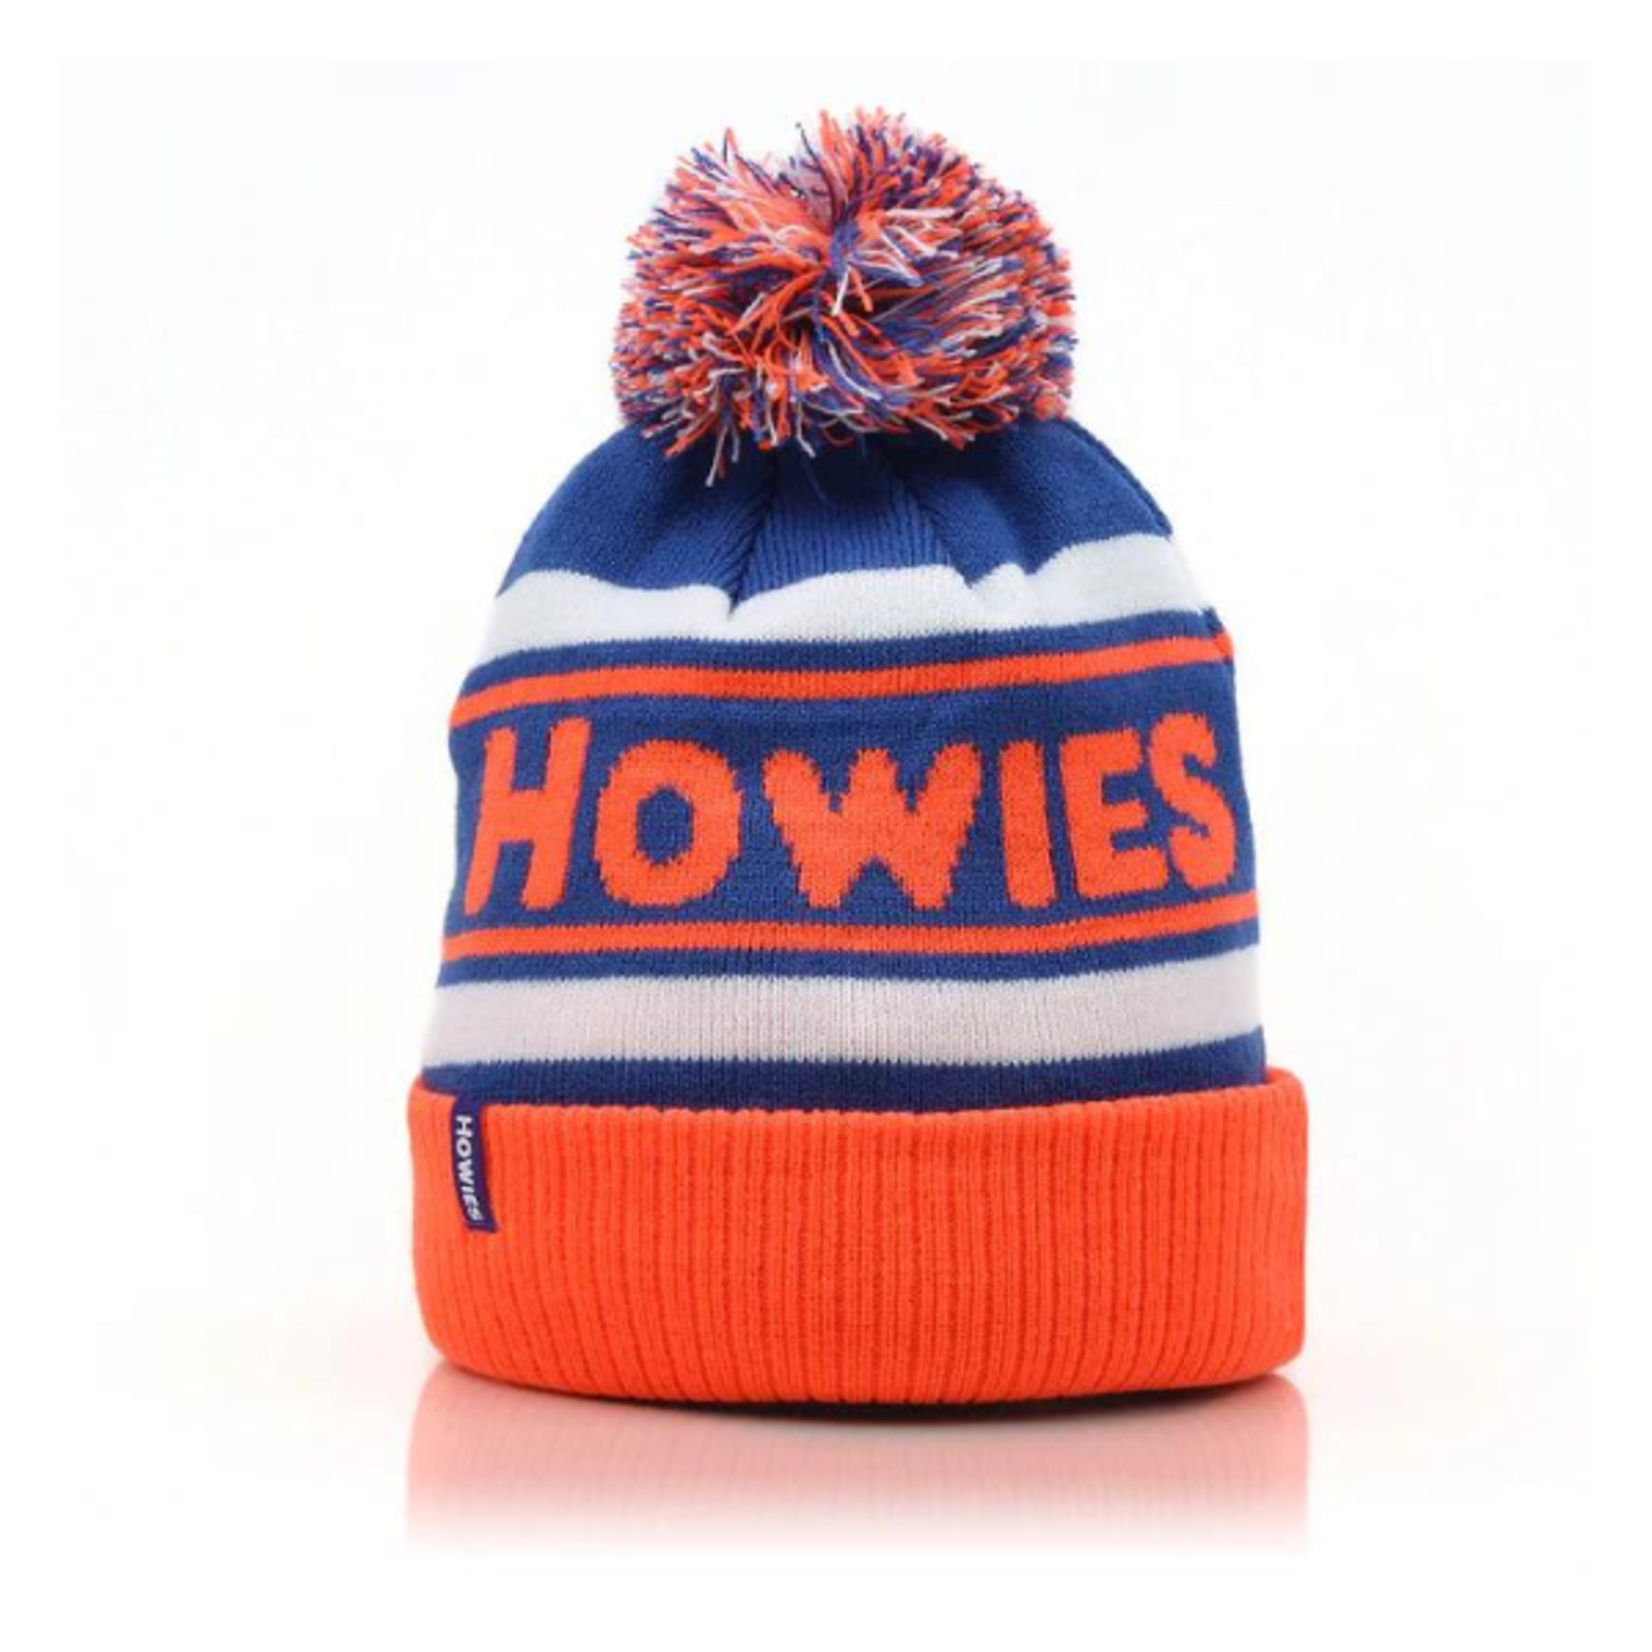 Howies Howies Winterpeg (ORANGE)